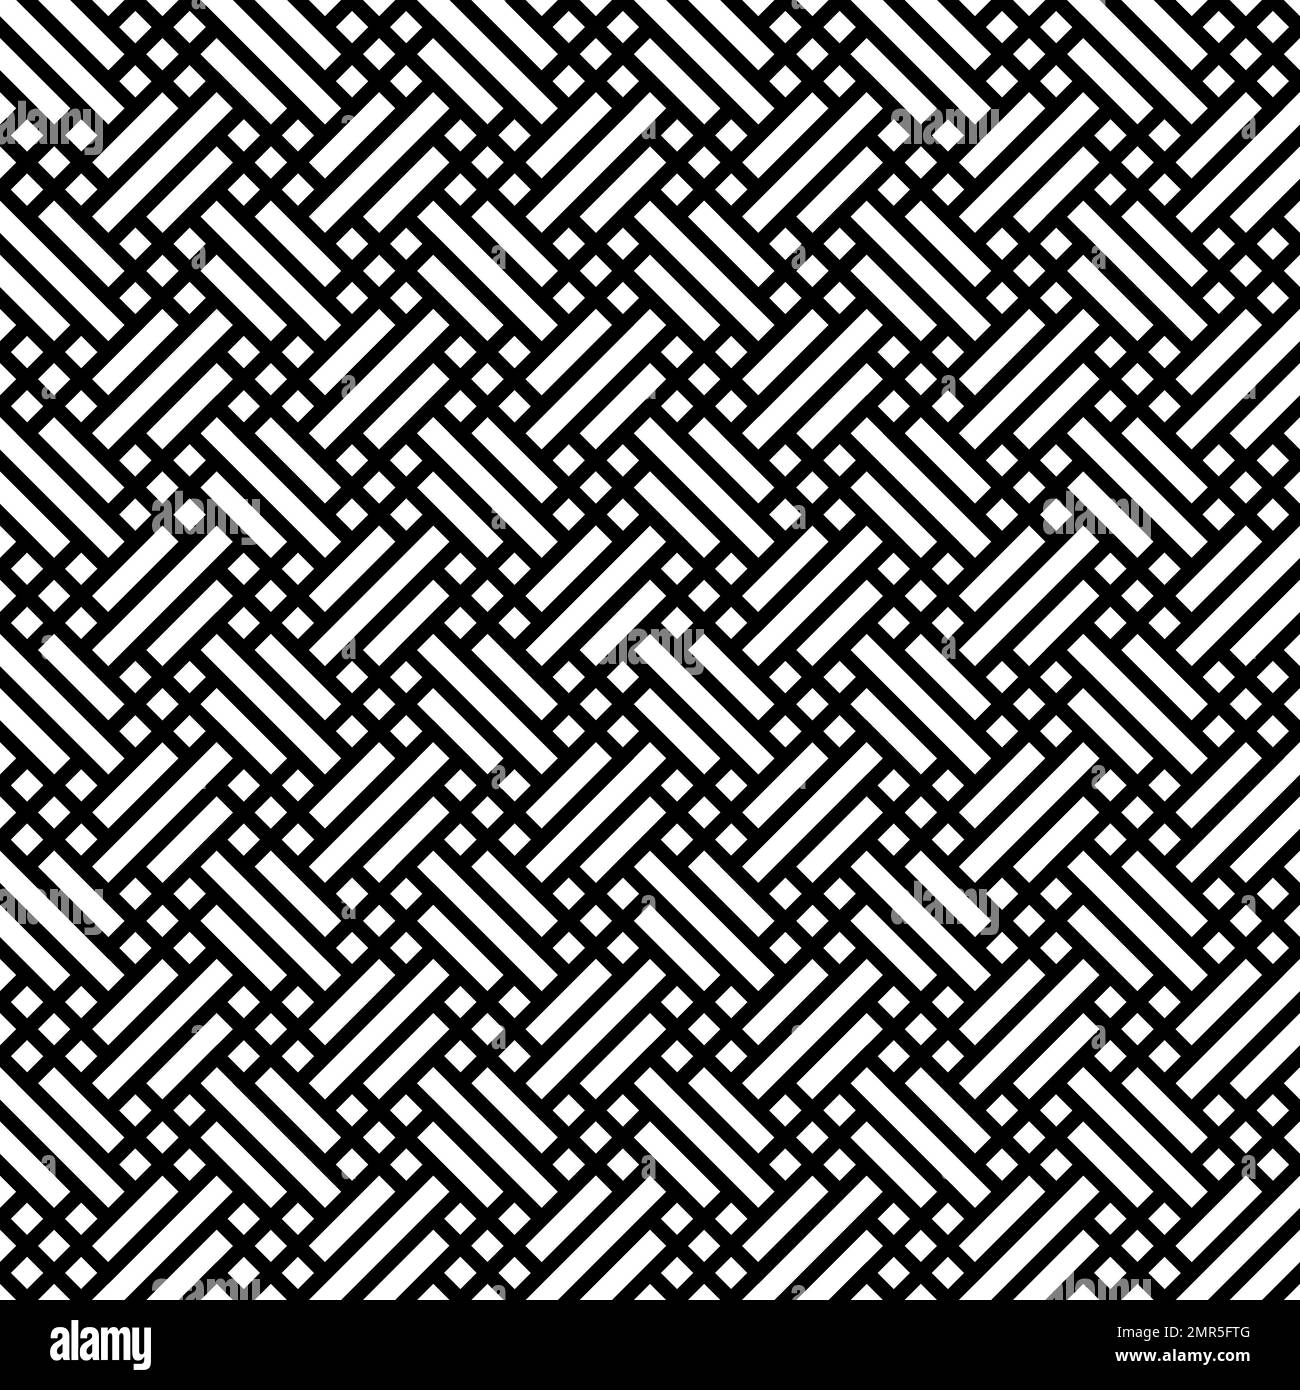 Motif d'arrière-plan sans couture en tissu rétro. Illustration vectorielle abstraite géométrique simple et plate en noir et blanc Illustration de Vecteur